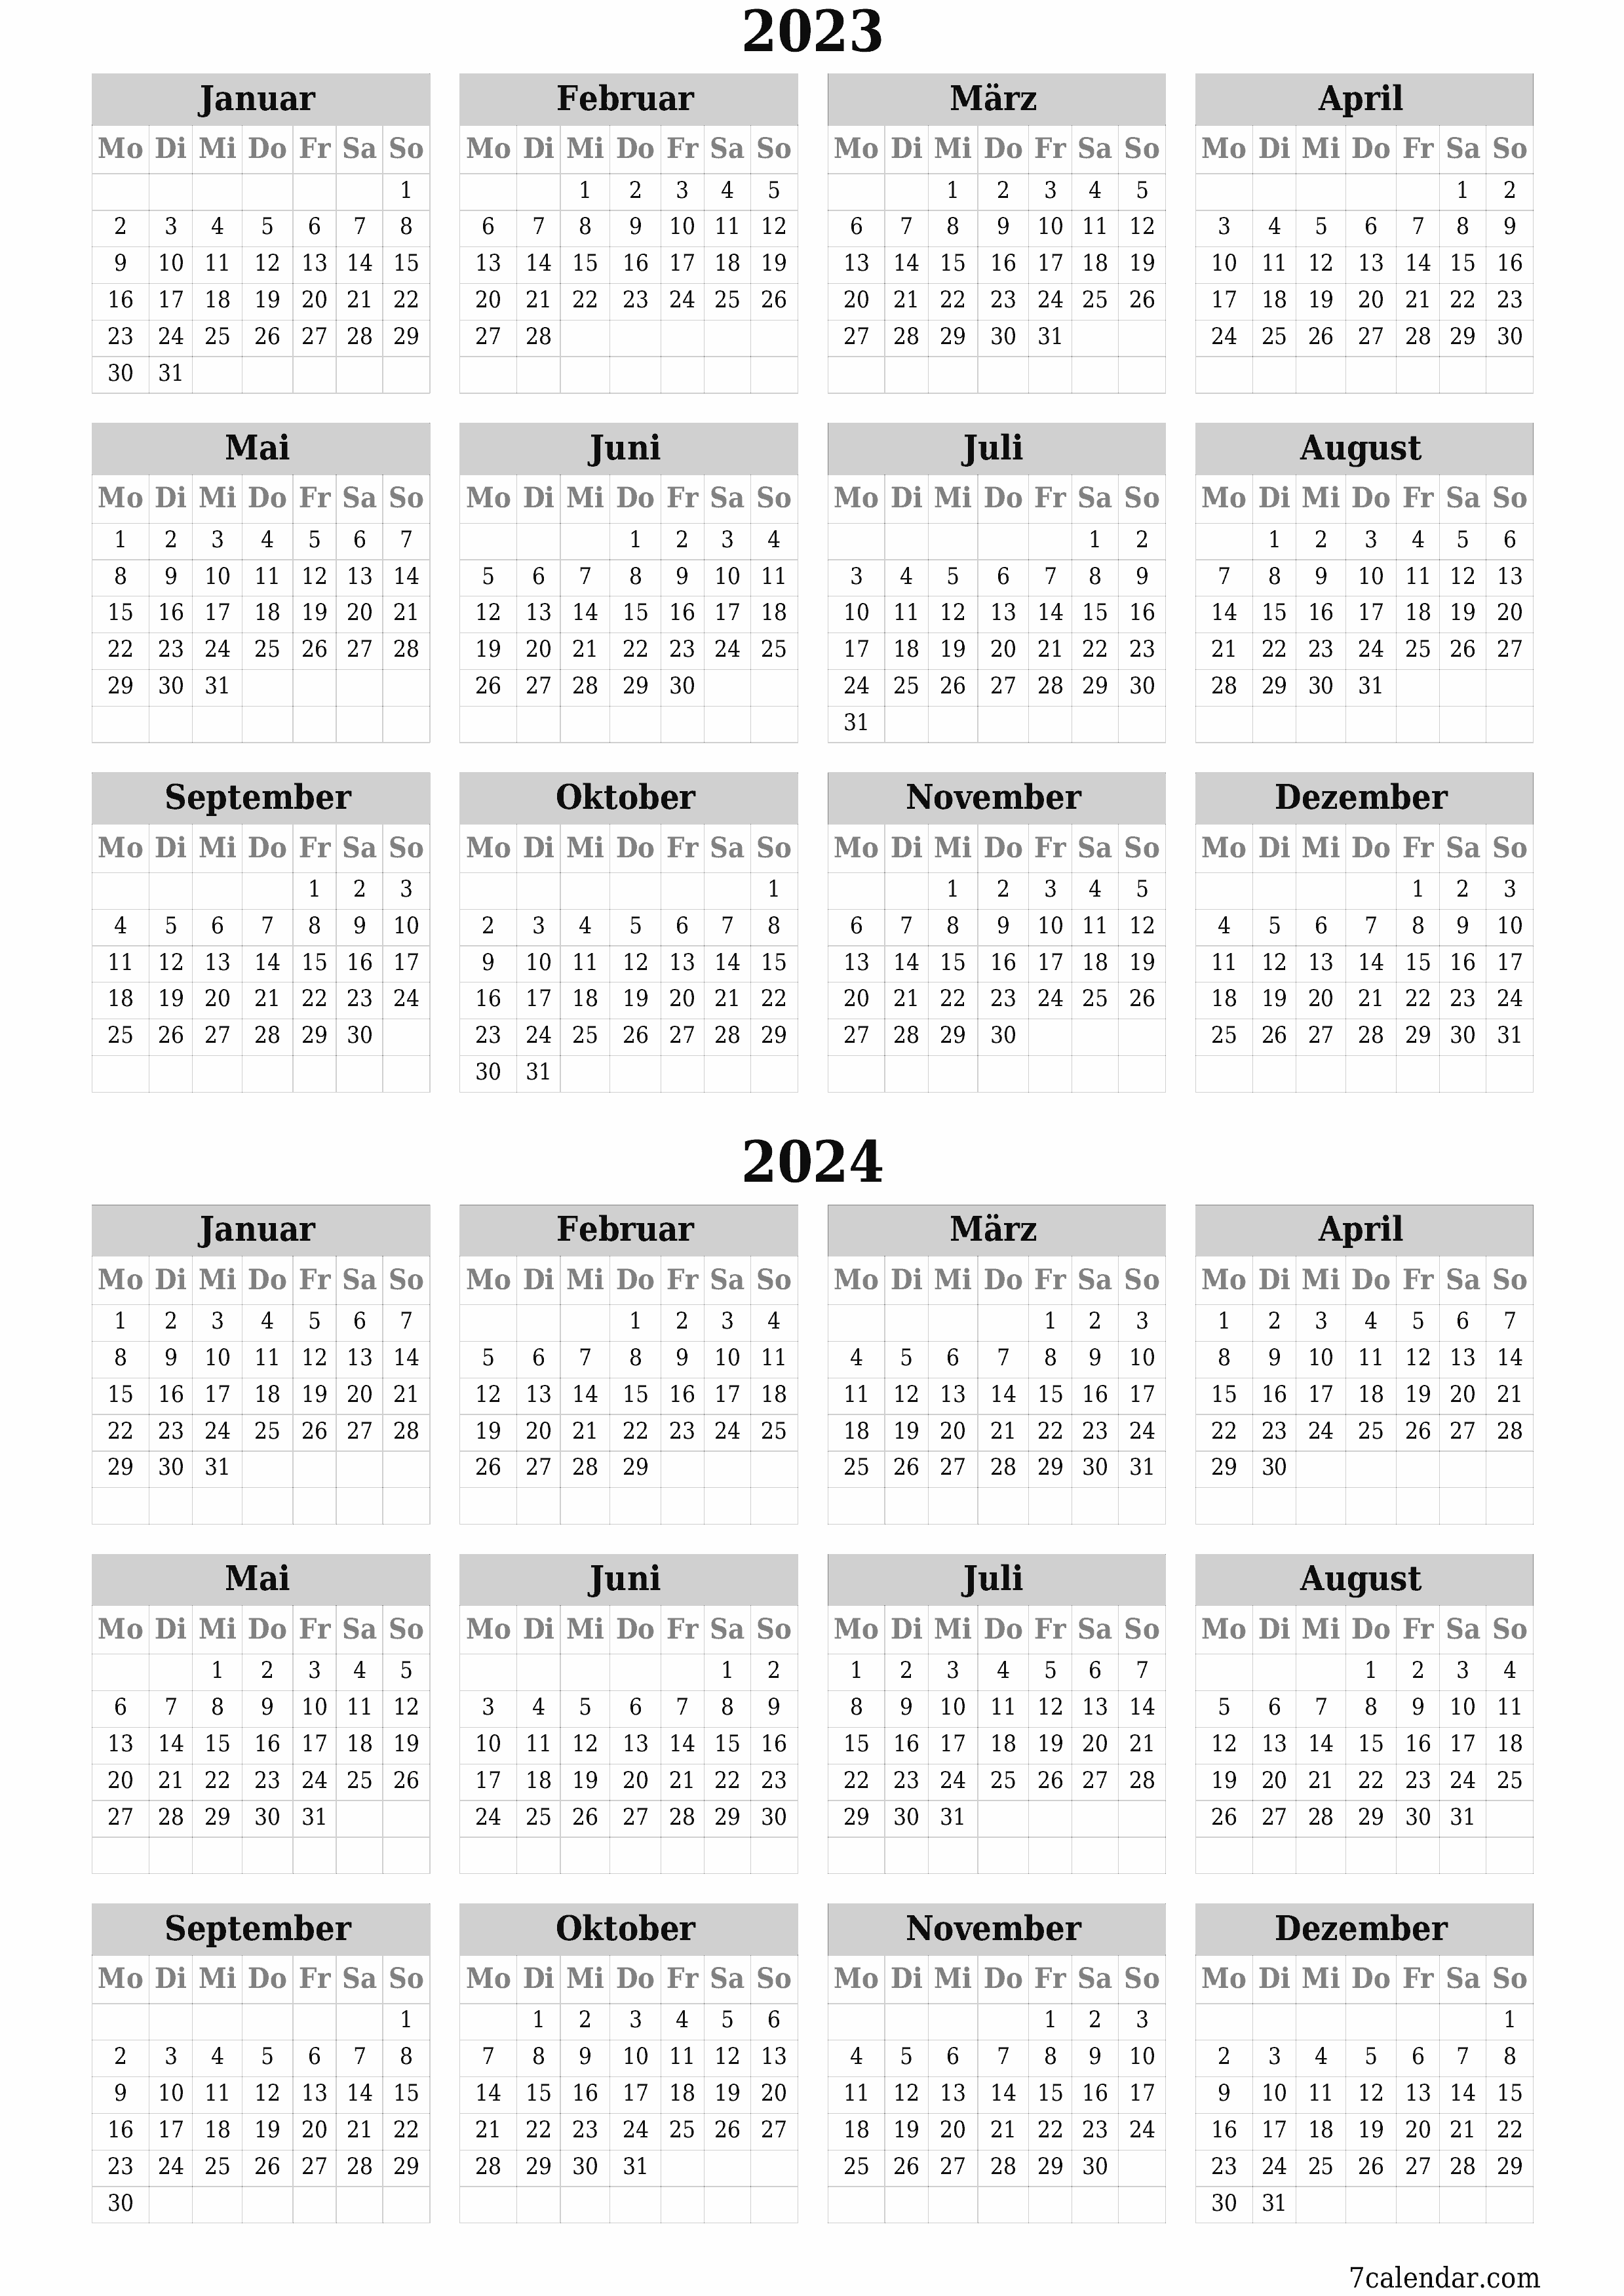  zum Ausdrucken Wandkalender vorlage kostenloser vertikal Jahreskalender Kalender März (Mär) 2023